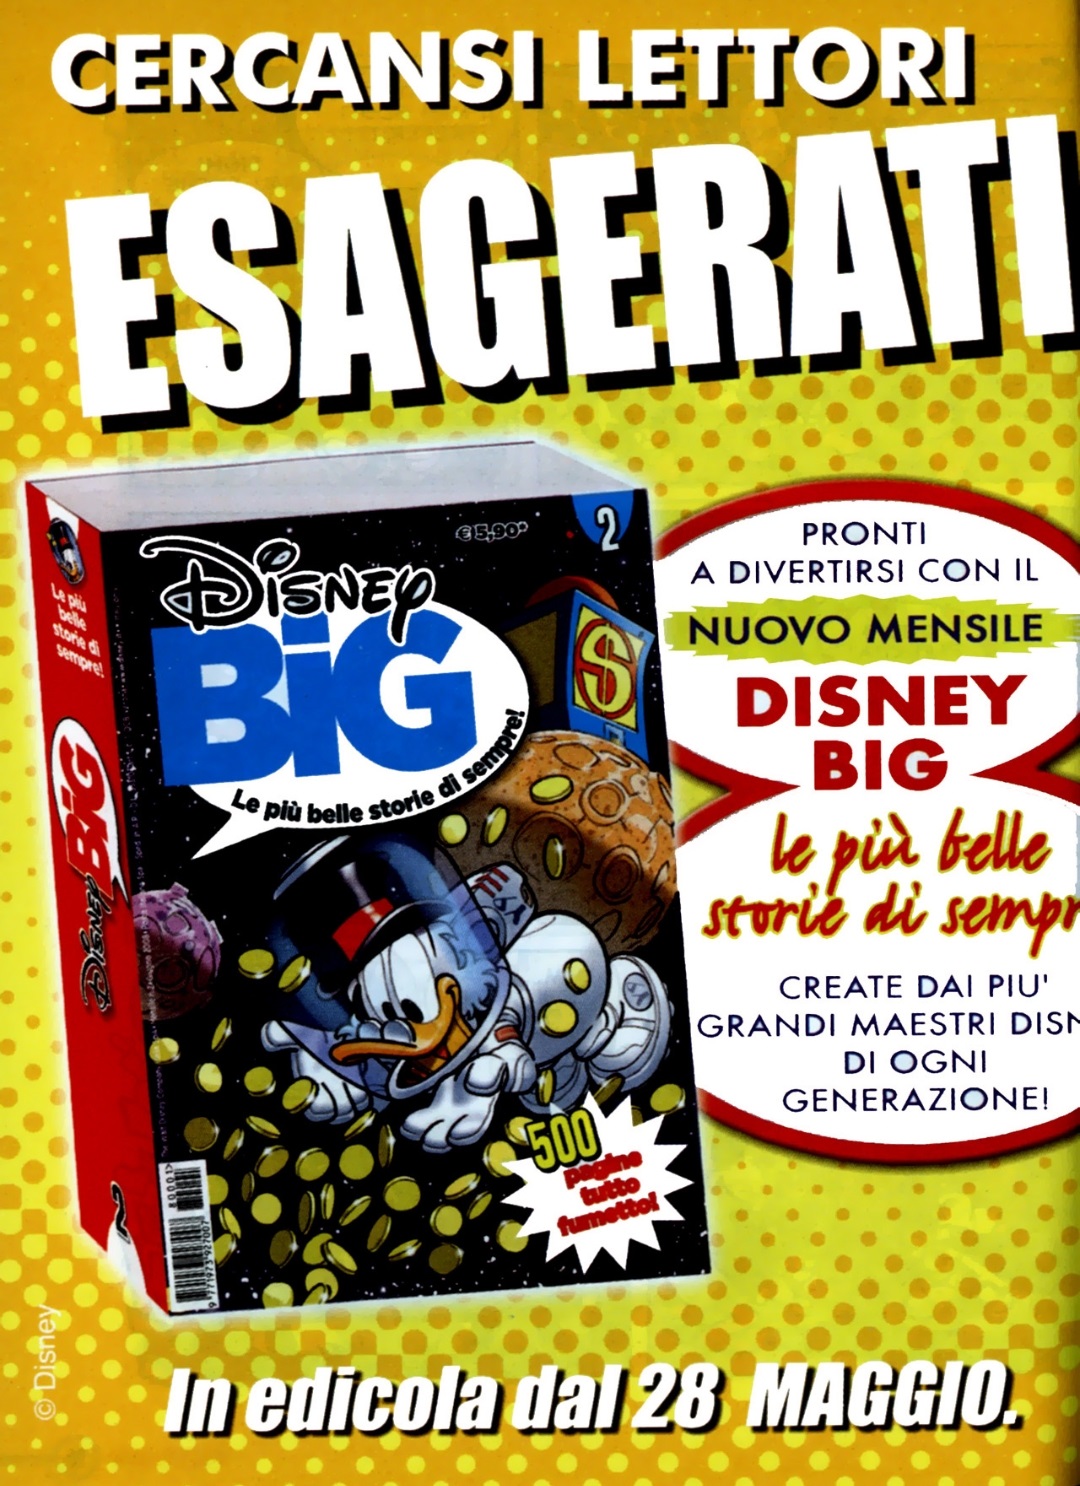 Disney Big - Immagine promozionale